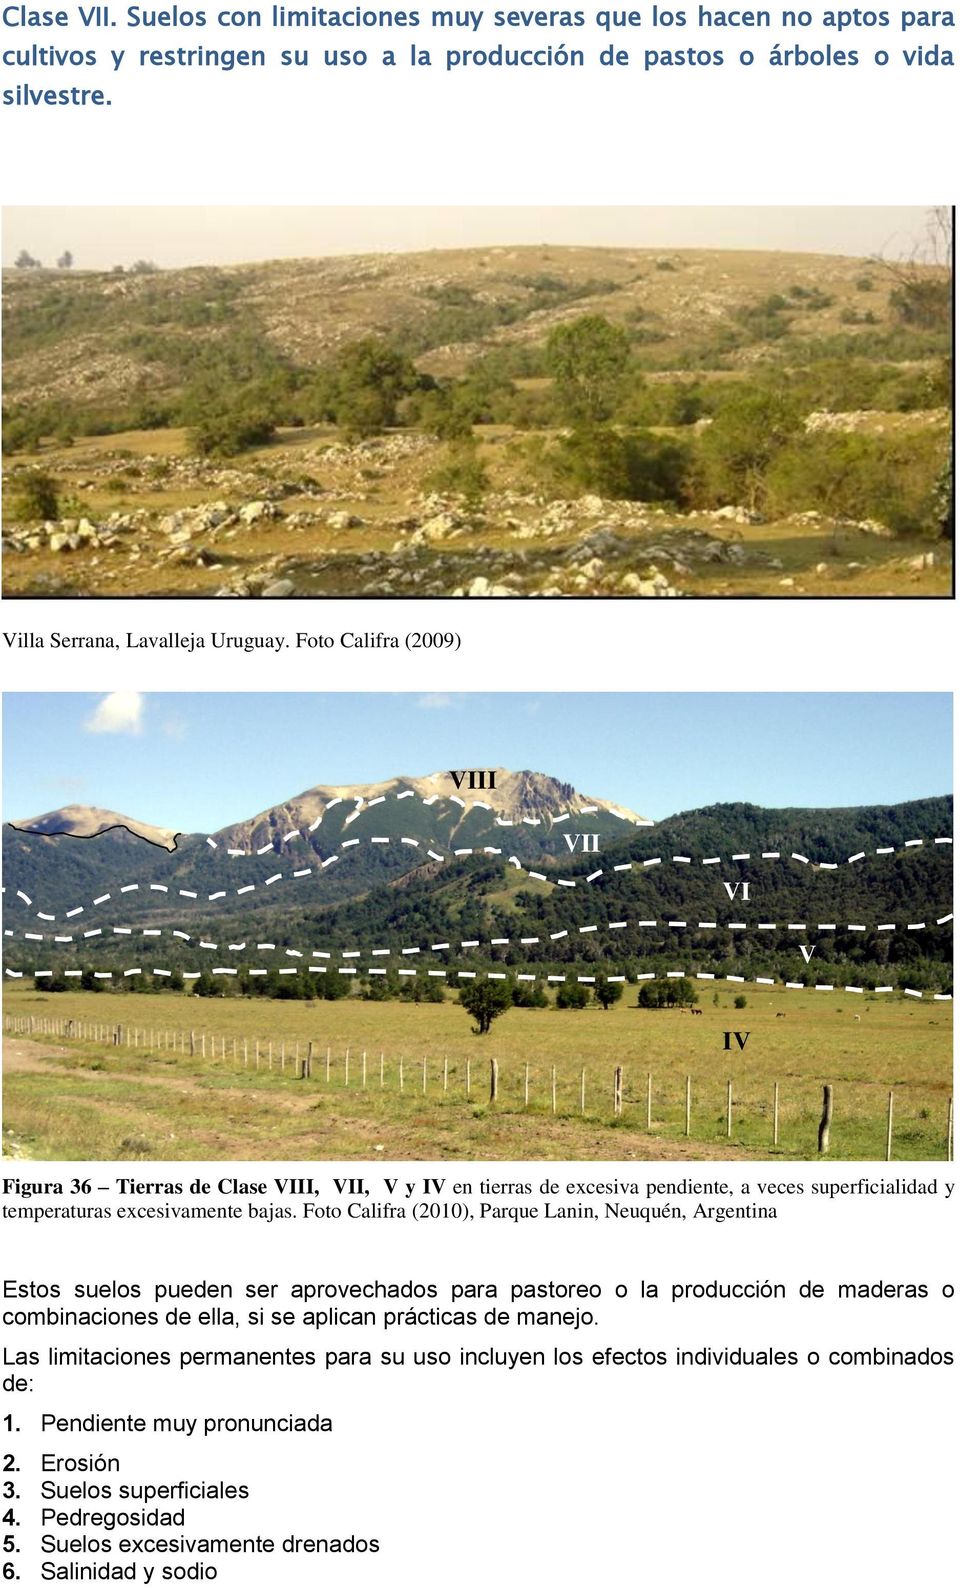 Foto Califra (2010), Parque Lanin, Neuquén, Argentina Estos suelos pueden ser aprovechados para pastoreo o la producción de maderas o combinaciones de ella, si se aplican prácticas de manejo.